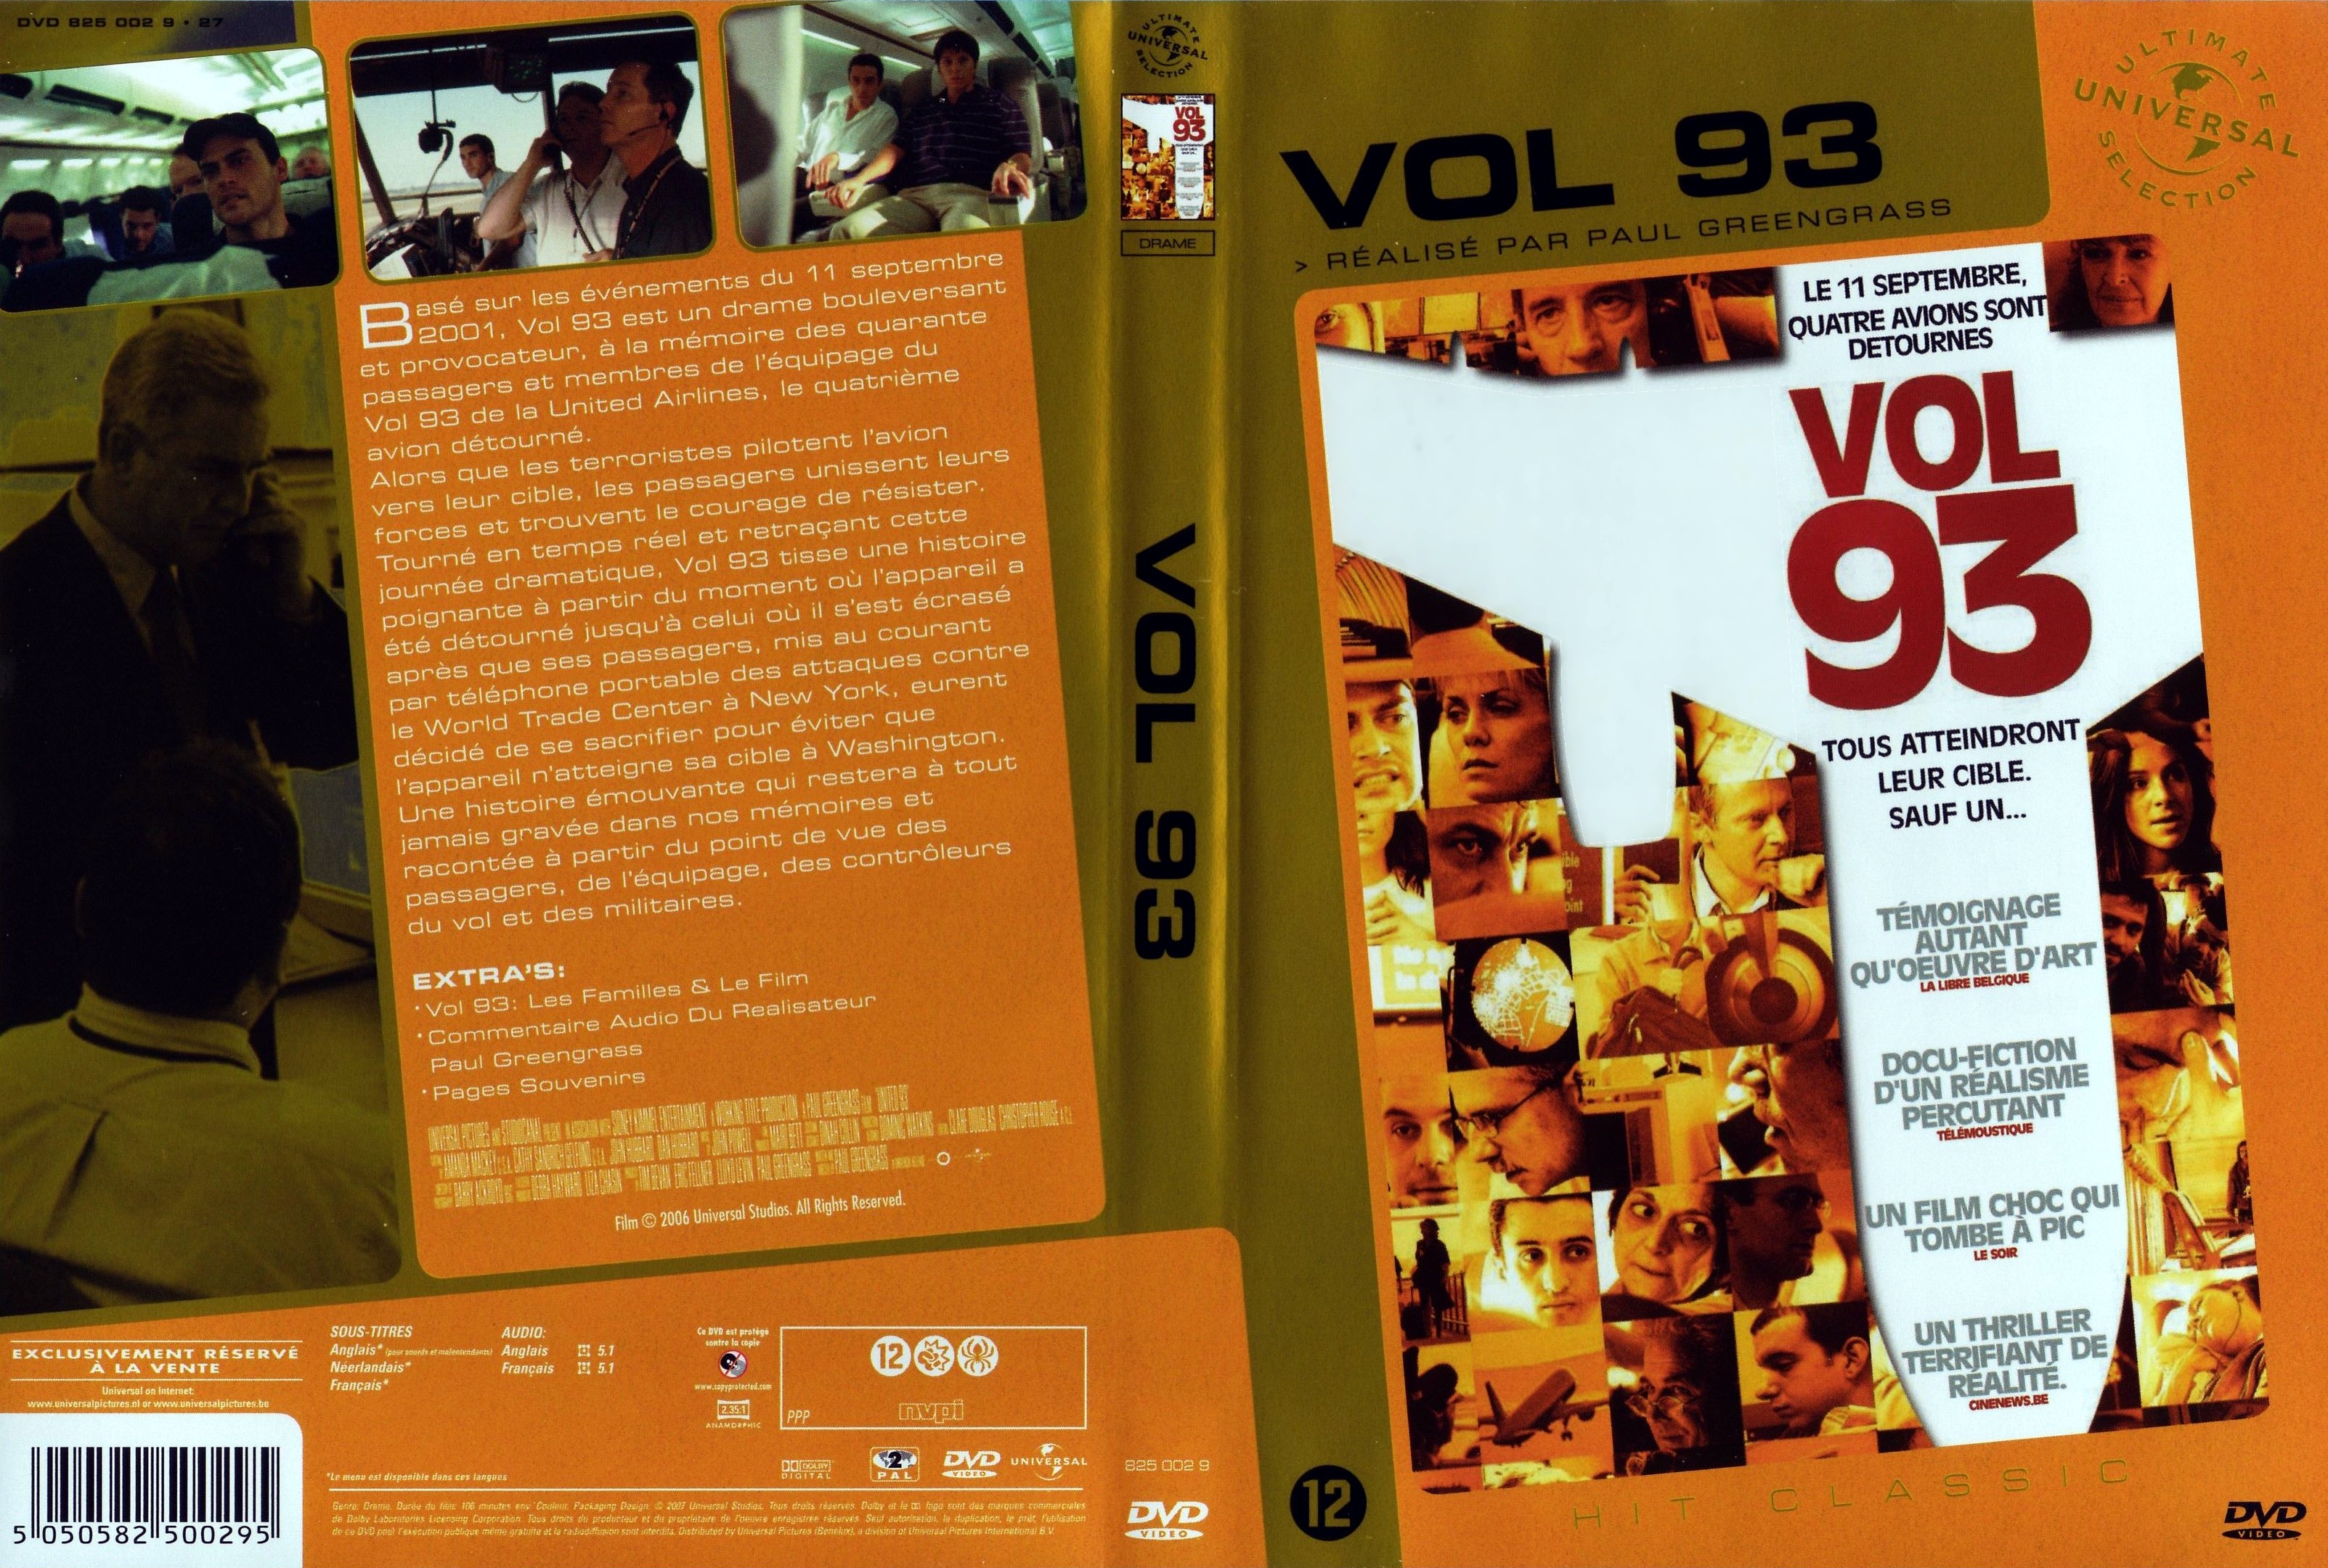 Jaquette DVD Vol 93 v3